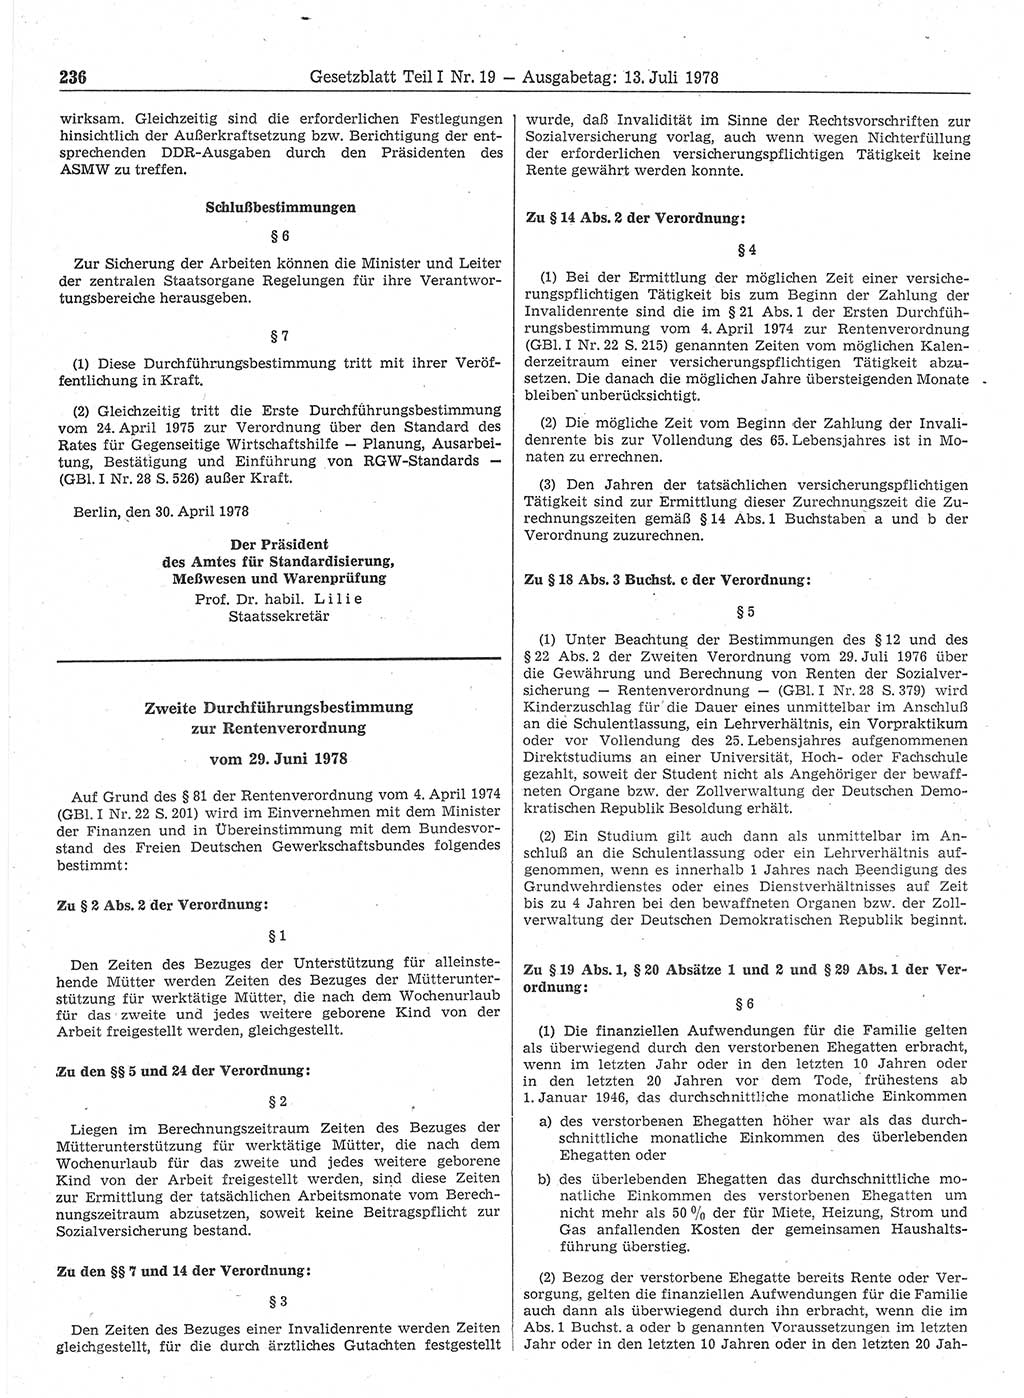 Gesetzblatt (GBl.) der Deutschen Demokratischen Republik (DDR) Teil Ⅰ 1978, Seite 236 (GBl. DDR Ⅰ 1978, S. 236)